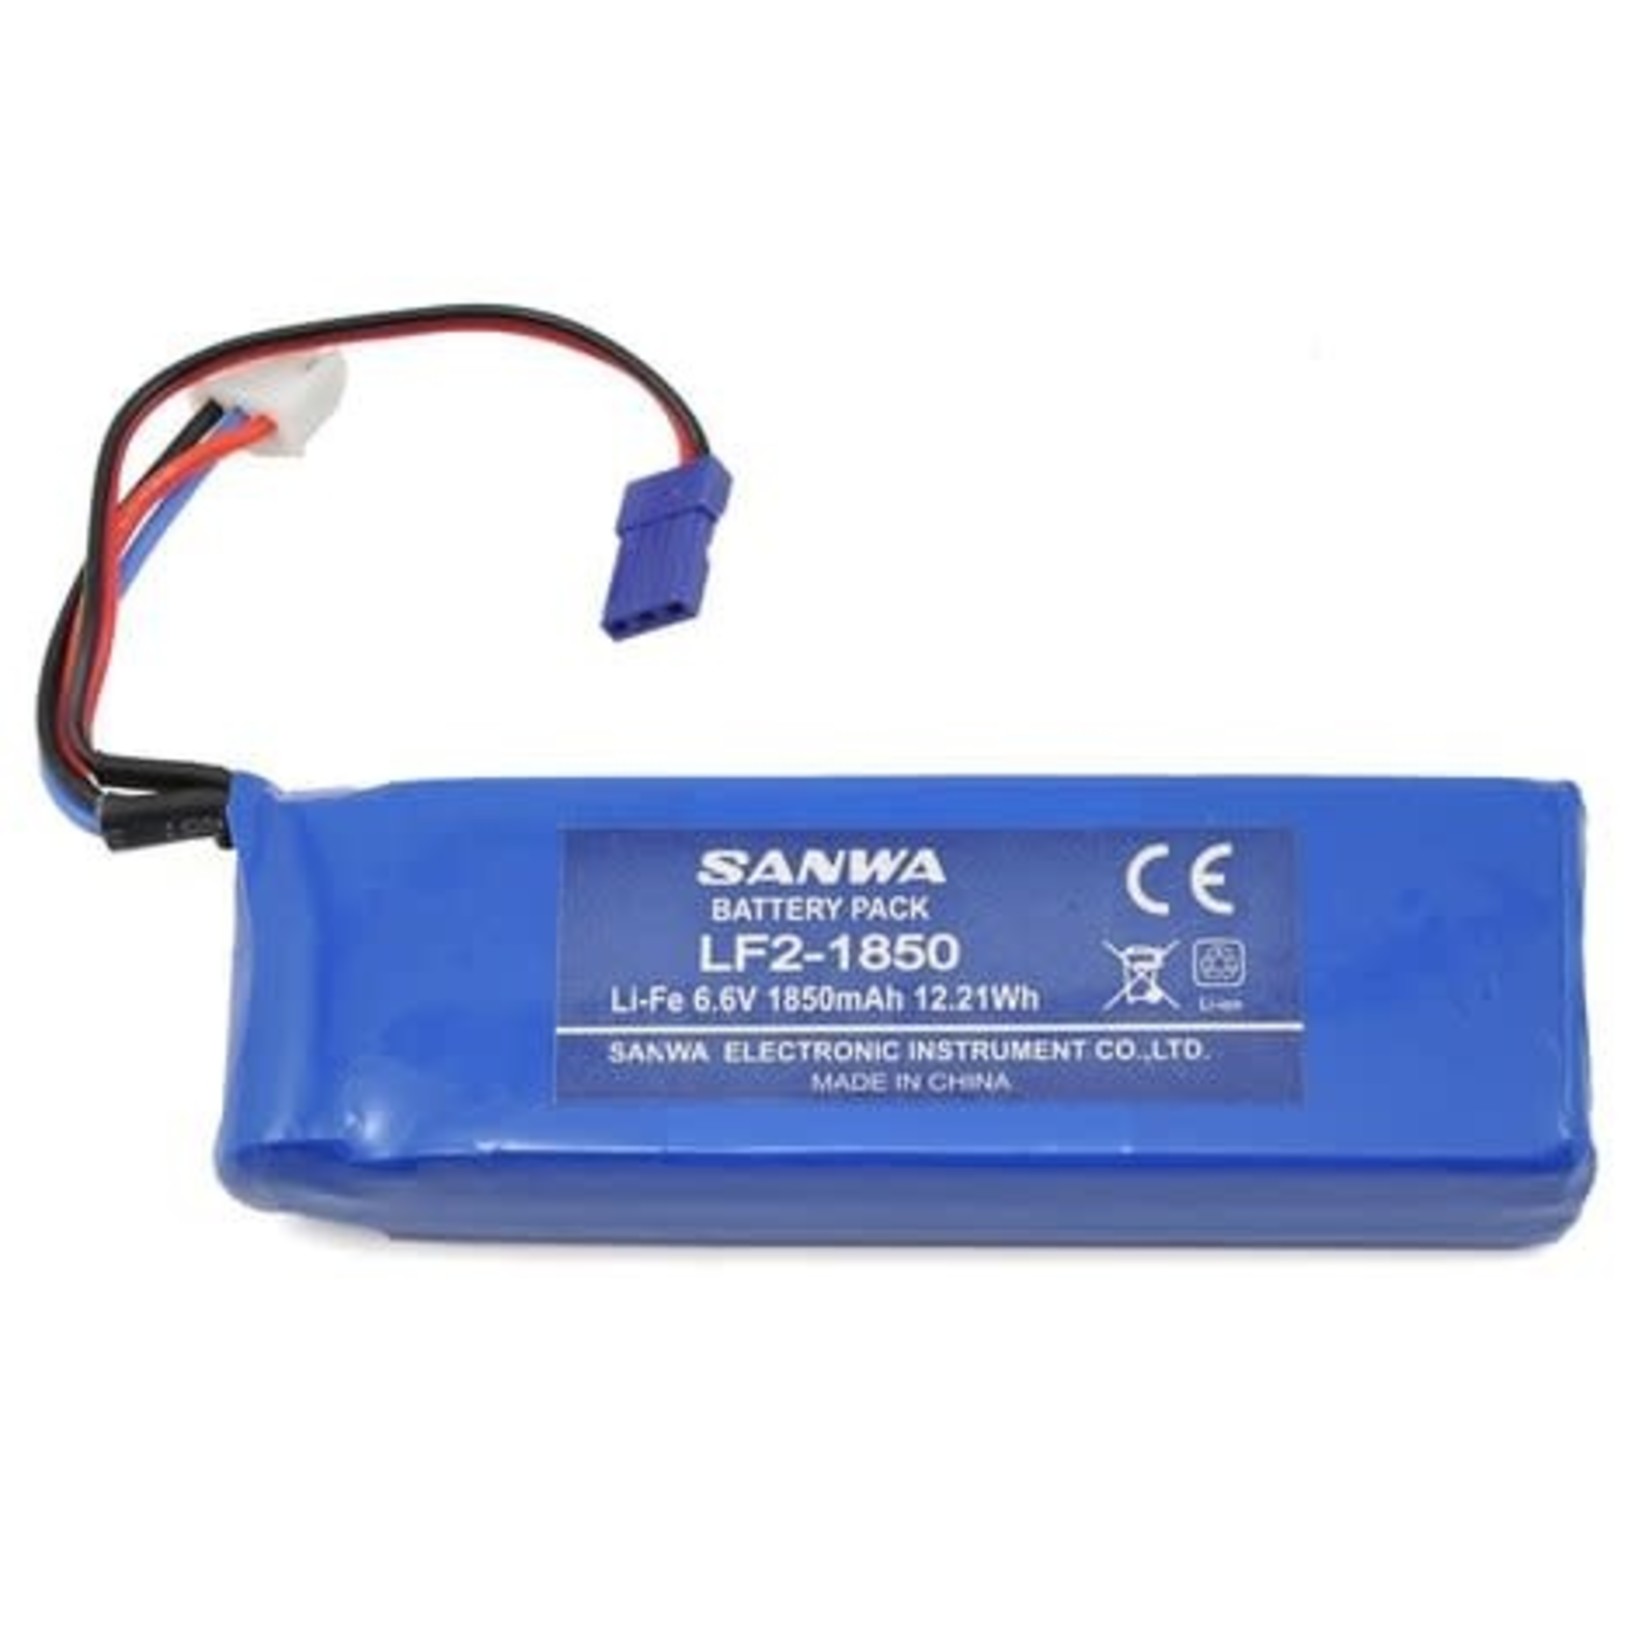 Sanwa Sanwa/Airtronics LF2-1850 2S LiFe Transmitter Battery (6.6V/1850mAh) (MT4, M12) #107A10951A